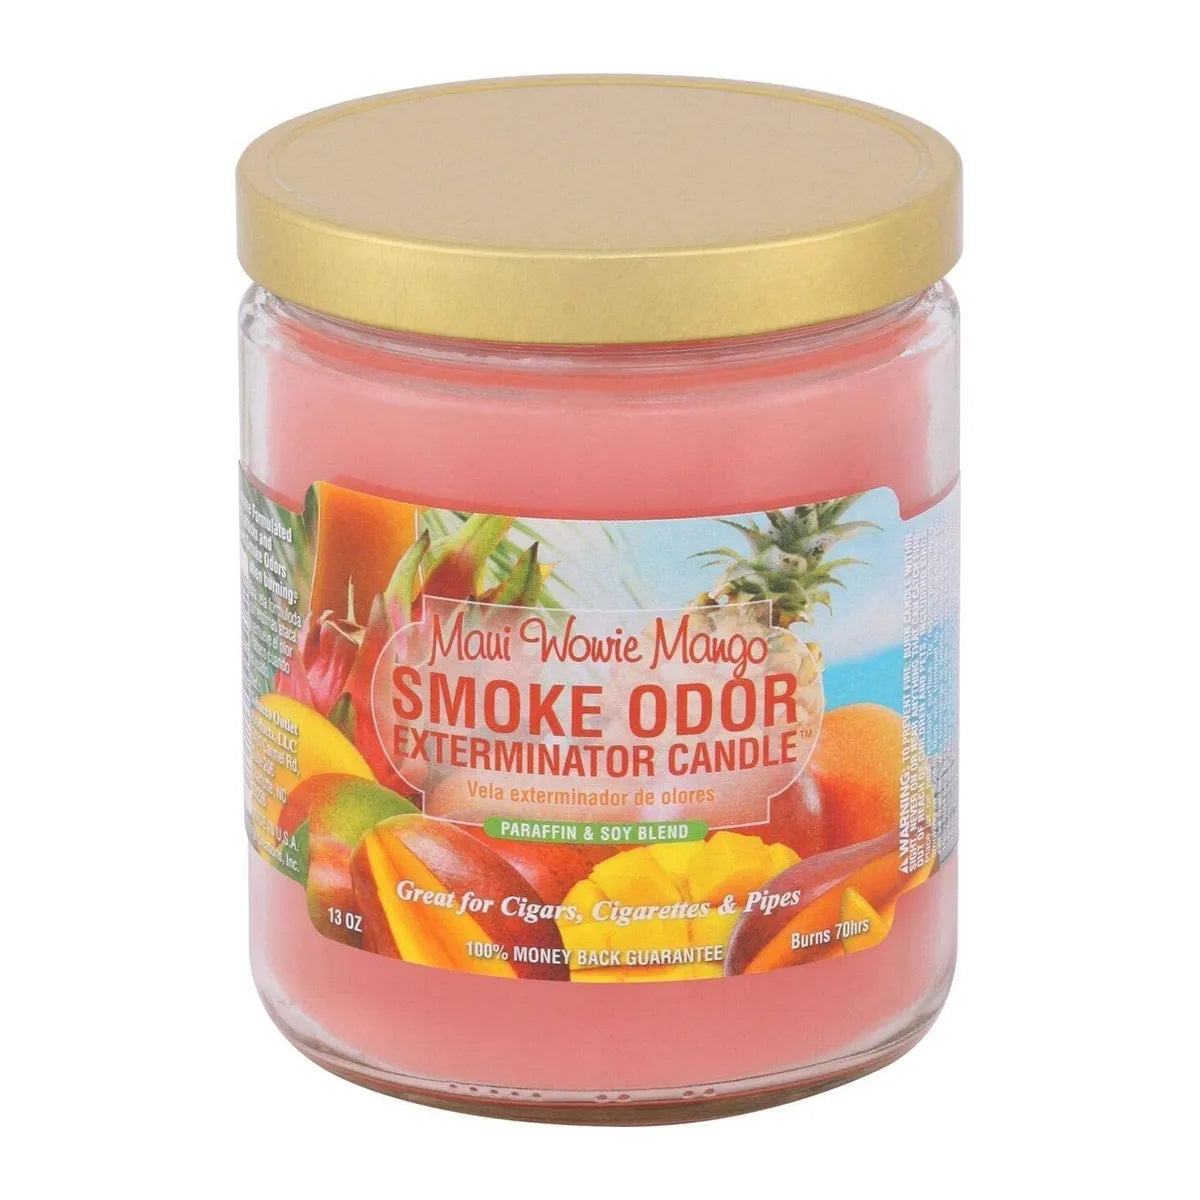 Smoke Odor Exterminator Candle 13oz